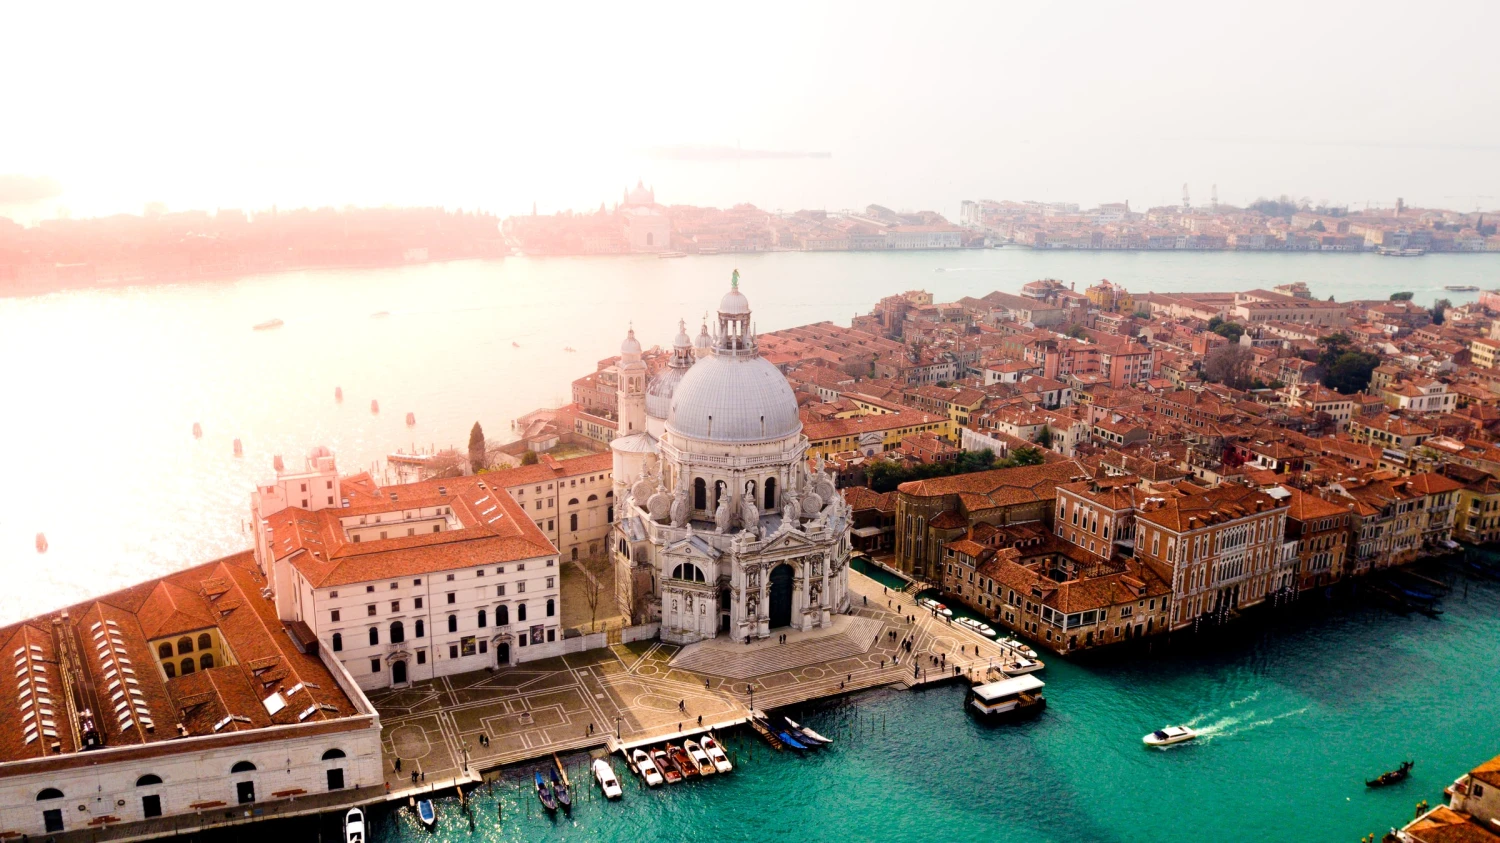 Benátky začaly vybírat poplatek za vstup. Chtějí tím zmírnit dopady turismu